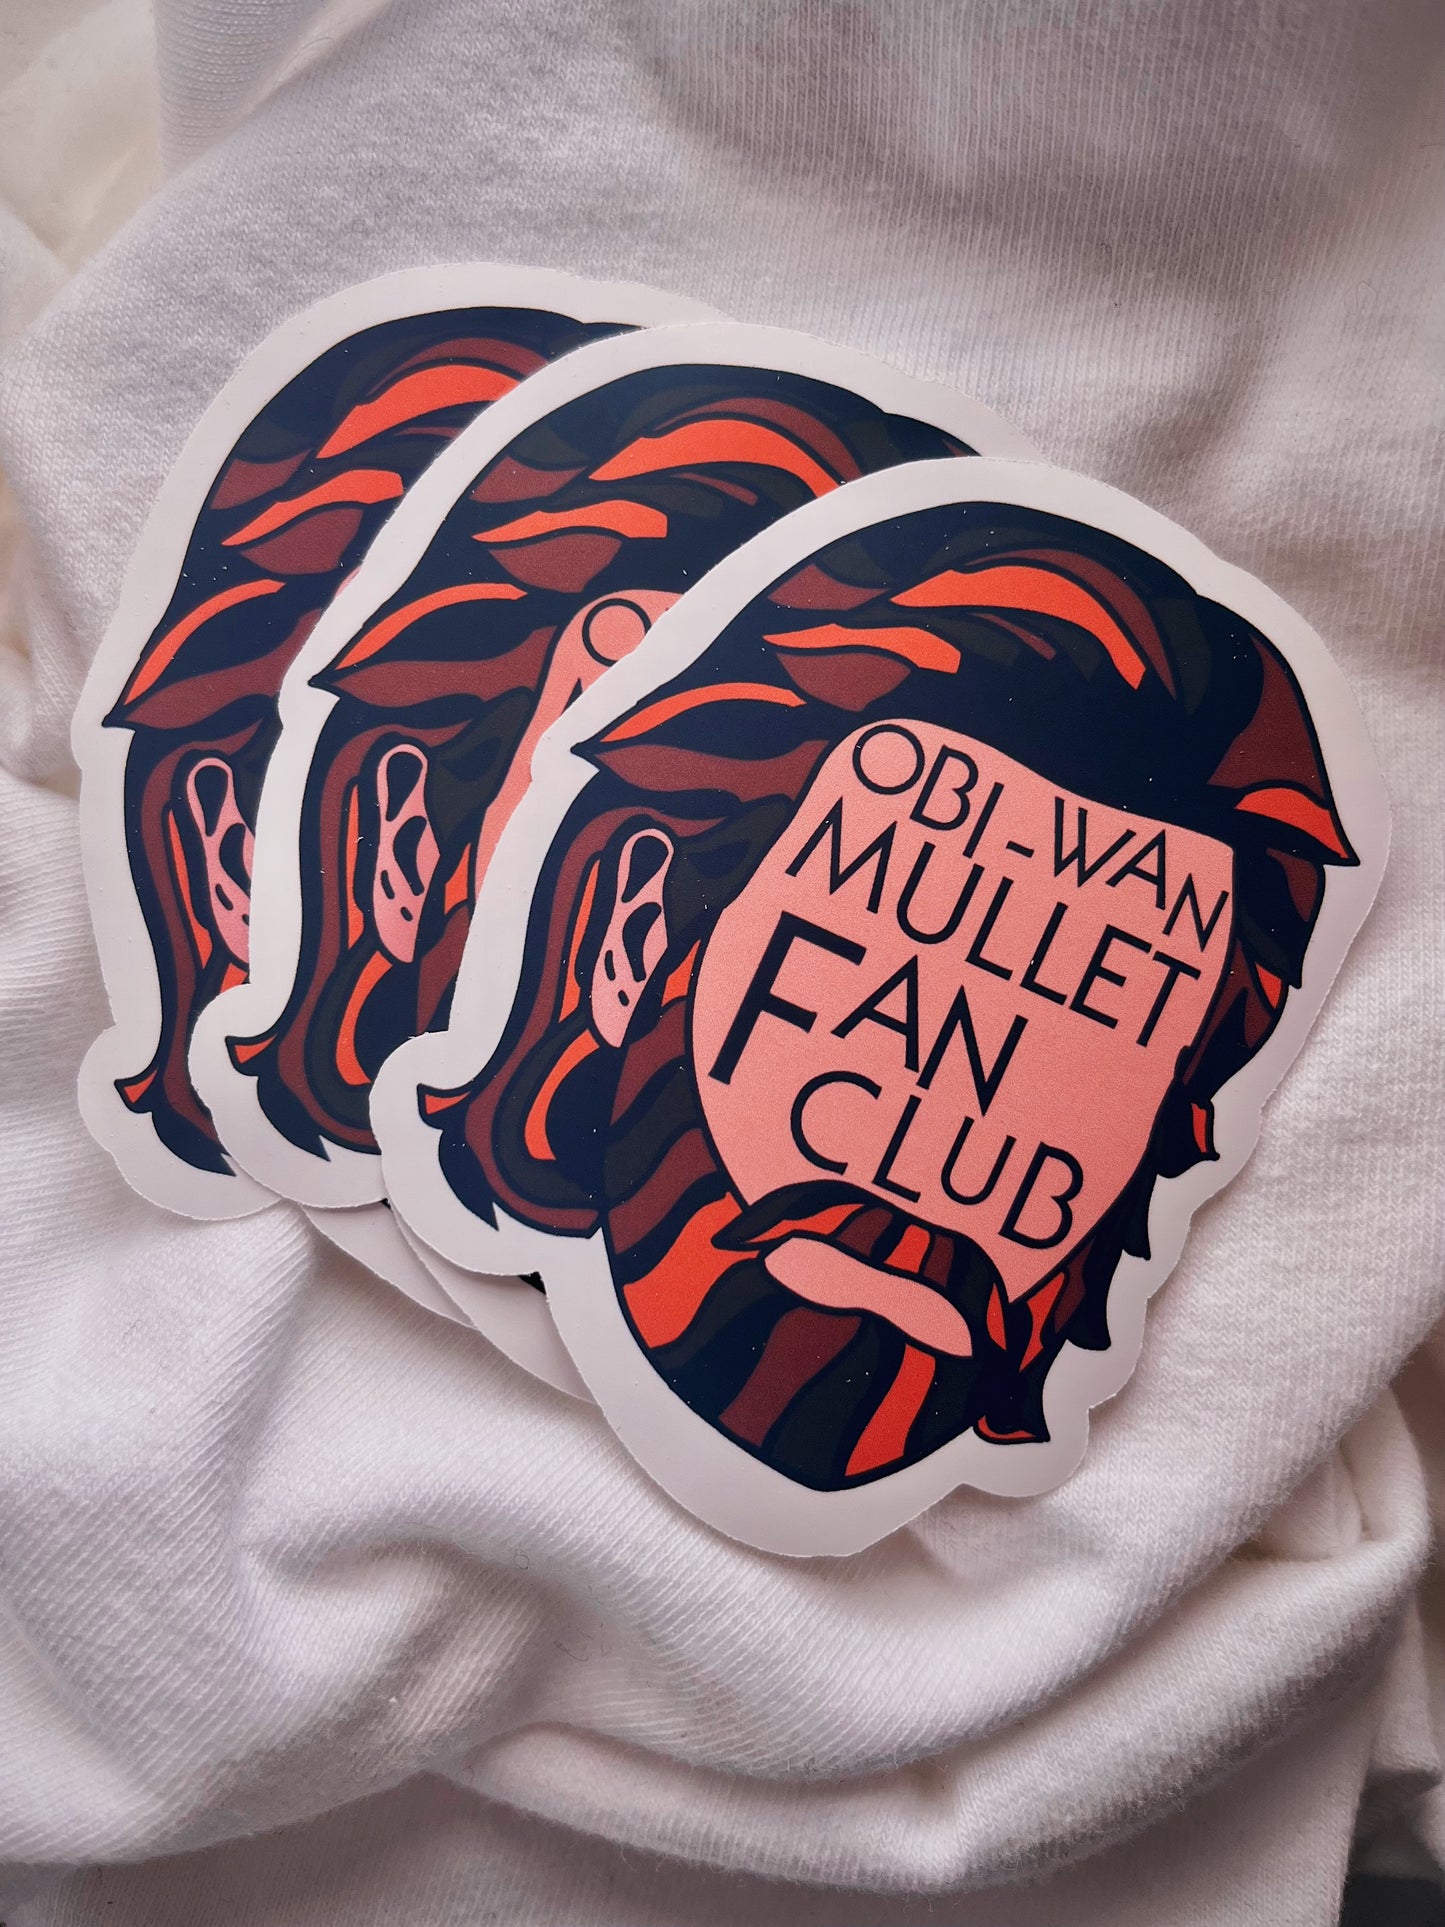 mullet club matte sticker